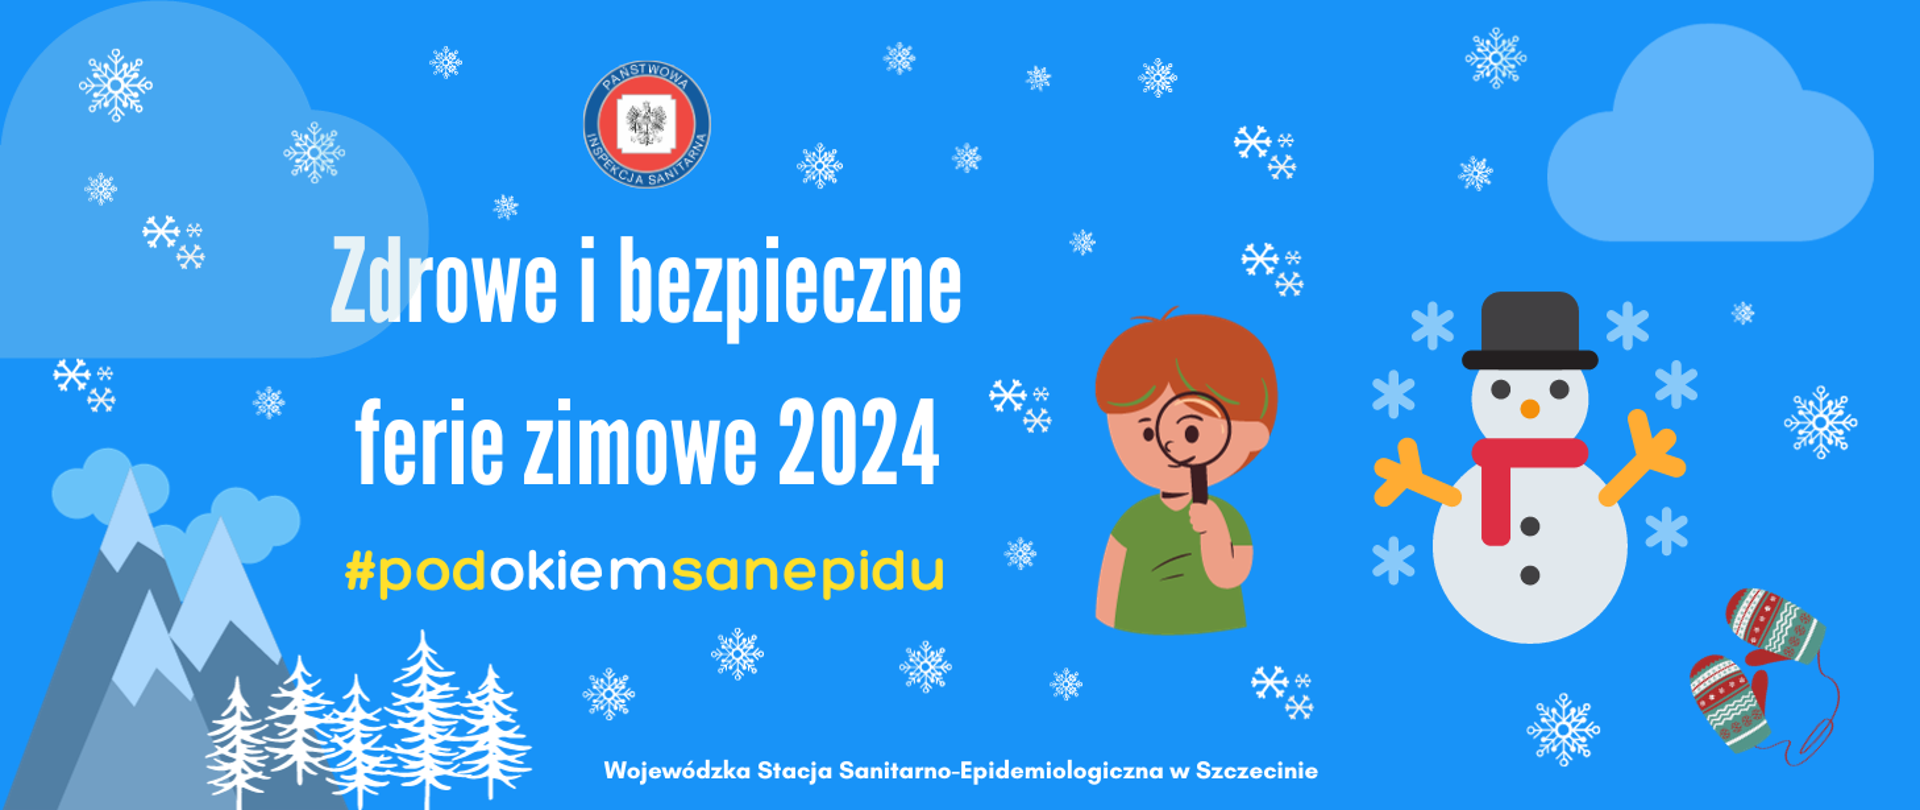 Logo Inspekcji, napis: zdrowe i bezpieczne ferie zimowe 2024, #podokiemsanepidu, zdjęcie chłopca z lupą i bałwana